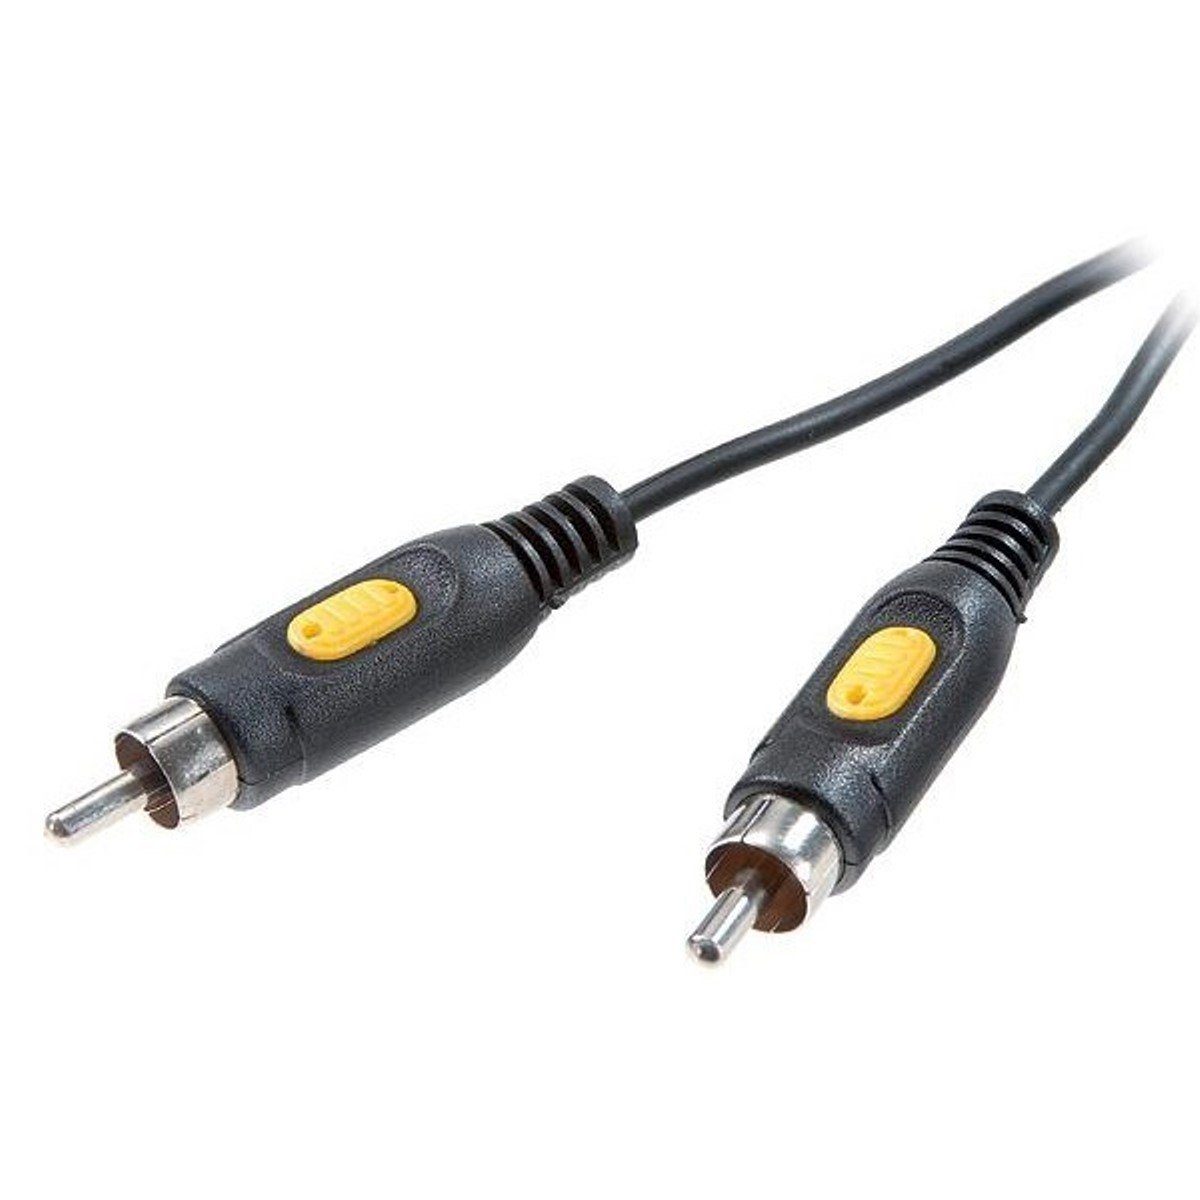 Vivanco 2m Cinch-Kabel Digital Koax-Kabel Audio-Kabel, Cinch, Cinch,  Koaxial-Kabel 1-1 Cinch-Stecker, 1x RCA Stecker auf Stecker, Audio HiFi,  Chinch-Kabel, geschirmt, auch als Composite Video-Kabel verwendbar